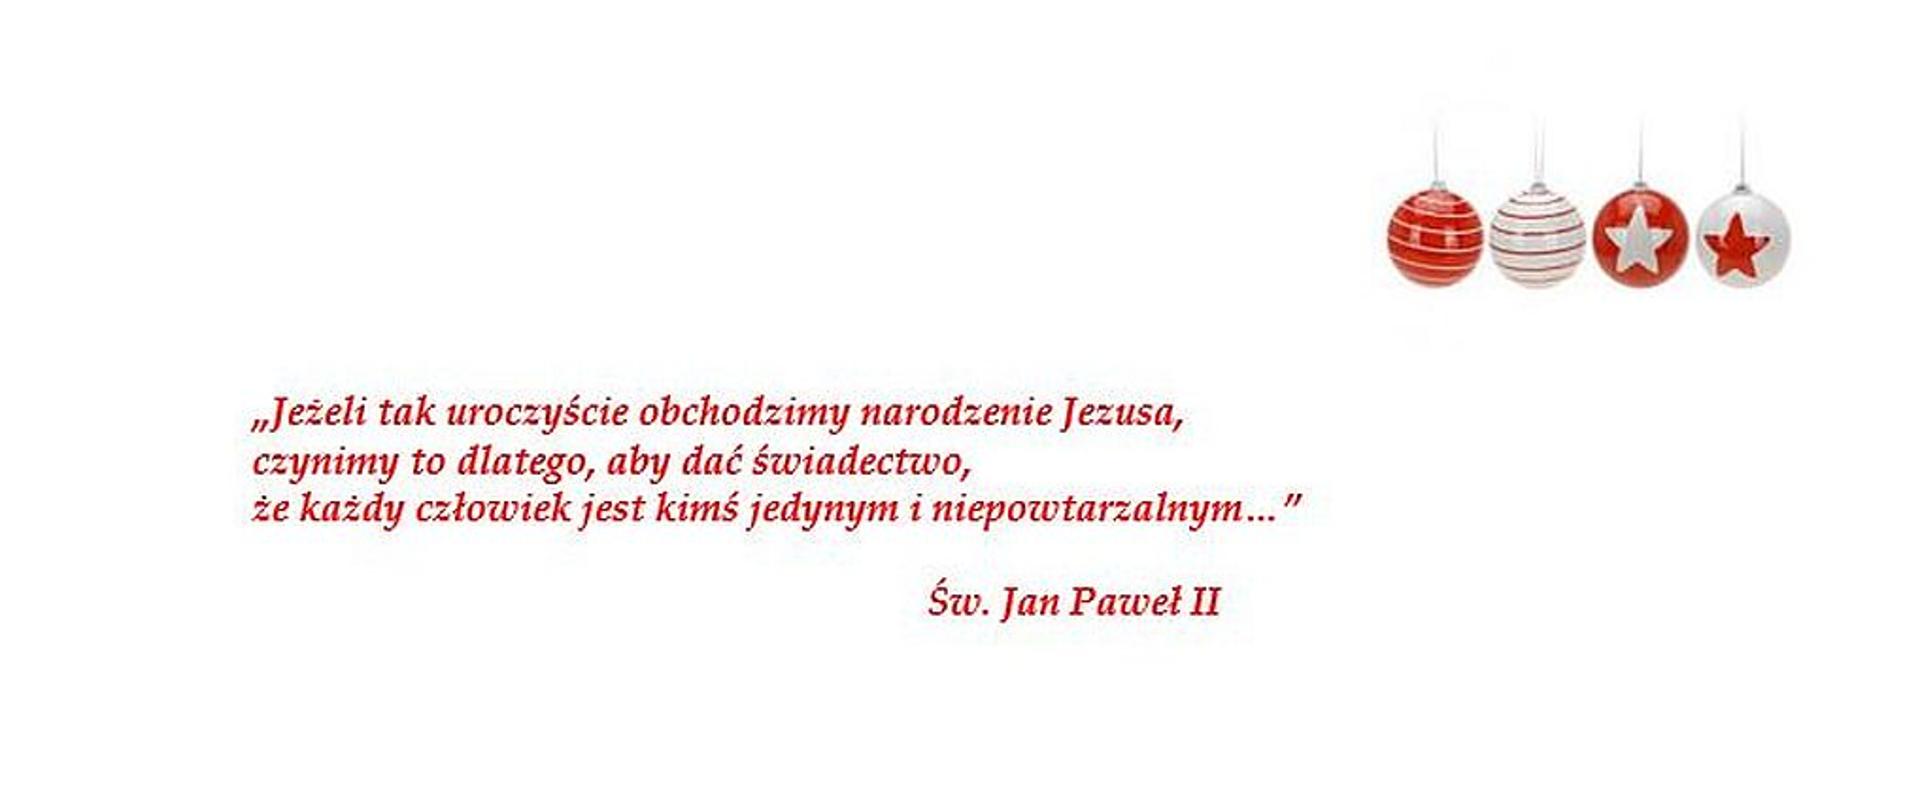 Zdjęcie zawiera cytat z Św. Jana Pawła II